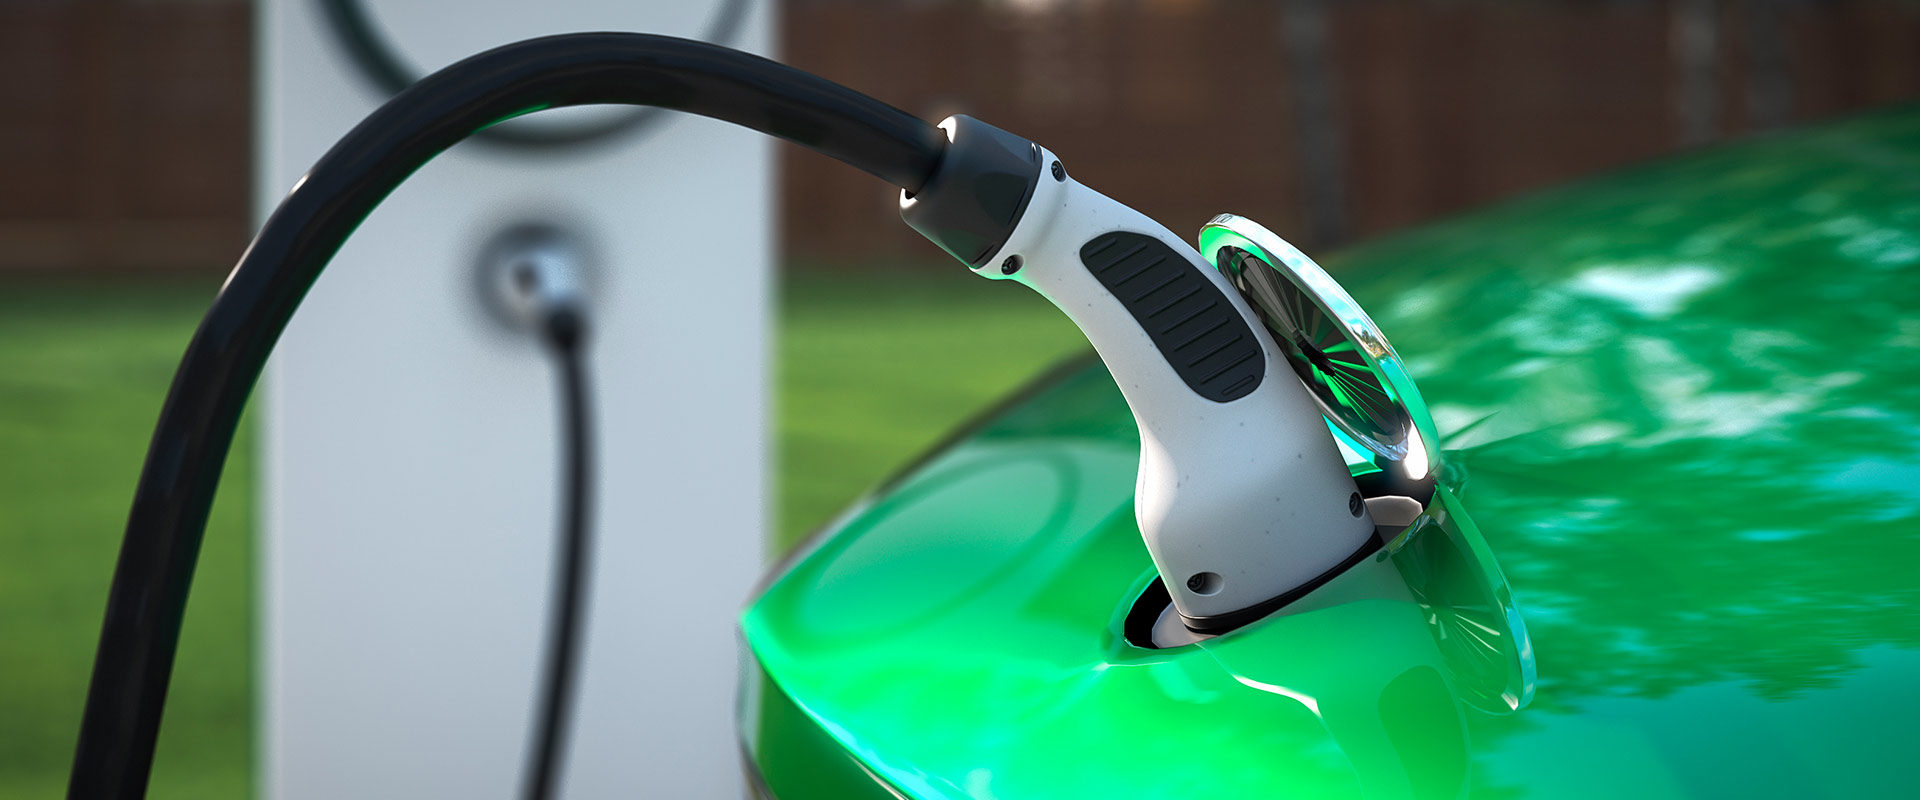 Le chargeur de voiture électrique le plus rapide du monde d'ABB  constituera-t-il une avancée majeure dans la popularisation des voitures  électriques ? - KnowHow